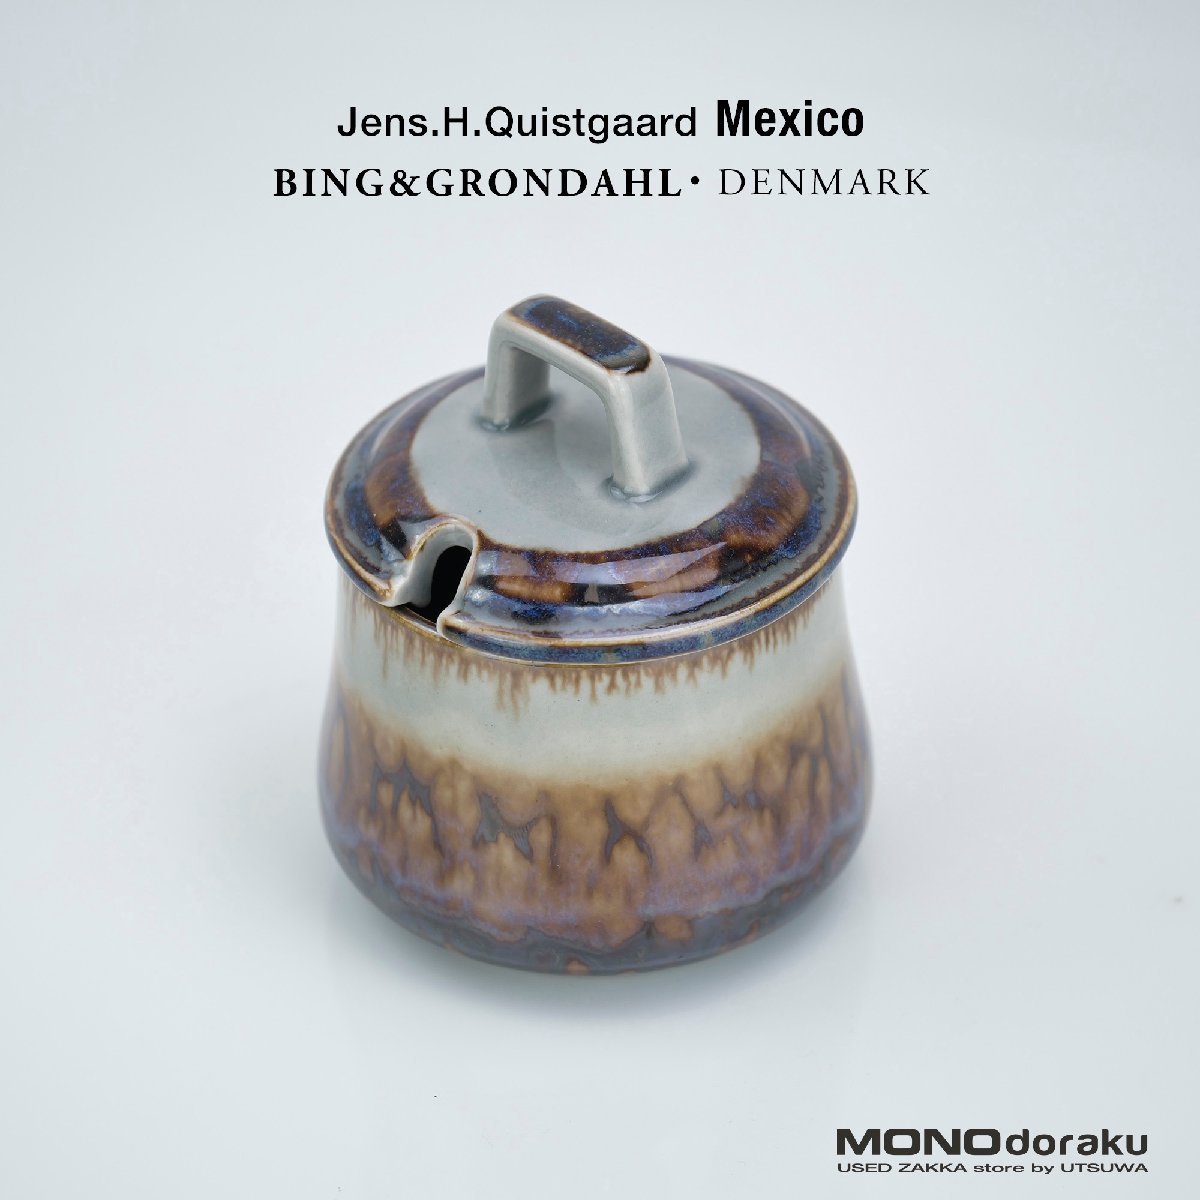 ビングオーグレンダール メキシコ イェンス クイストゴー シュガーポット 北欧 ヴィンテージ 洋食器_画像1